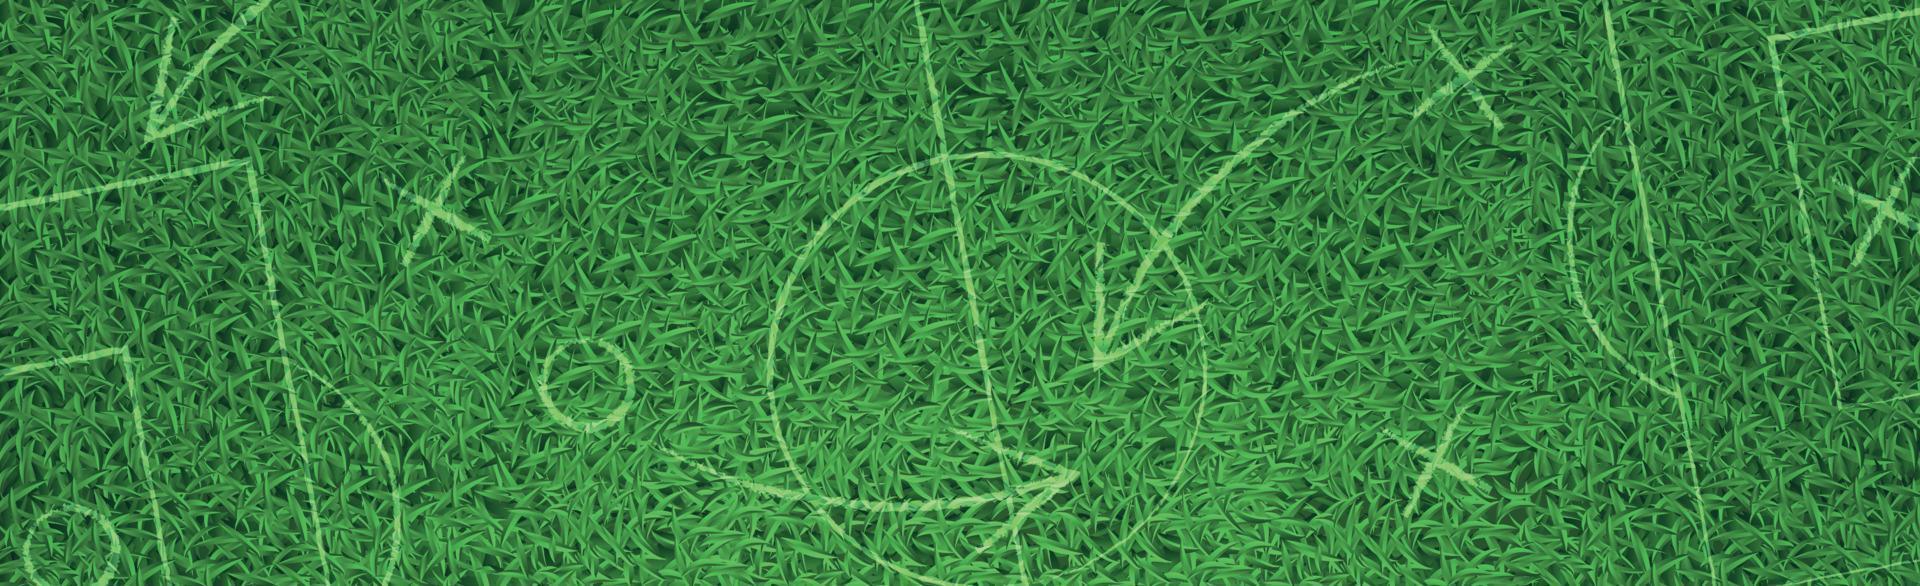 relvado de futebol de grama realista panorâmico de fundo verde com marcações - vetor